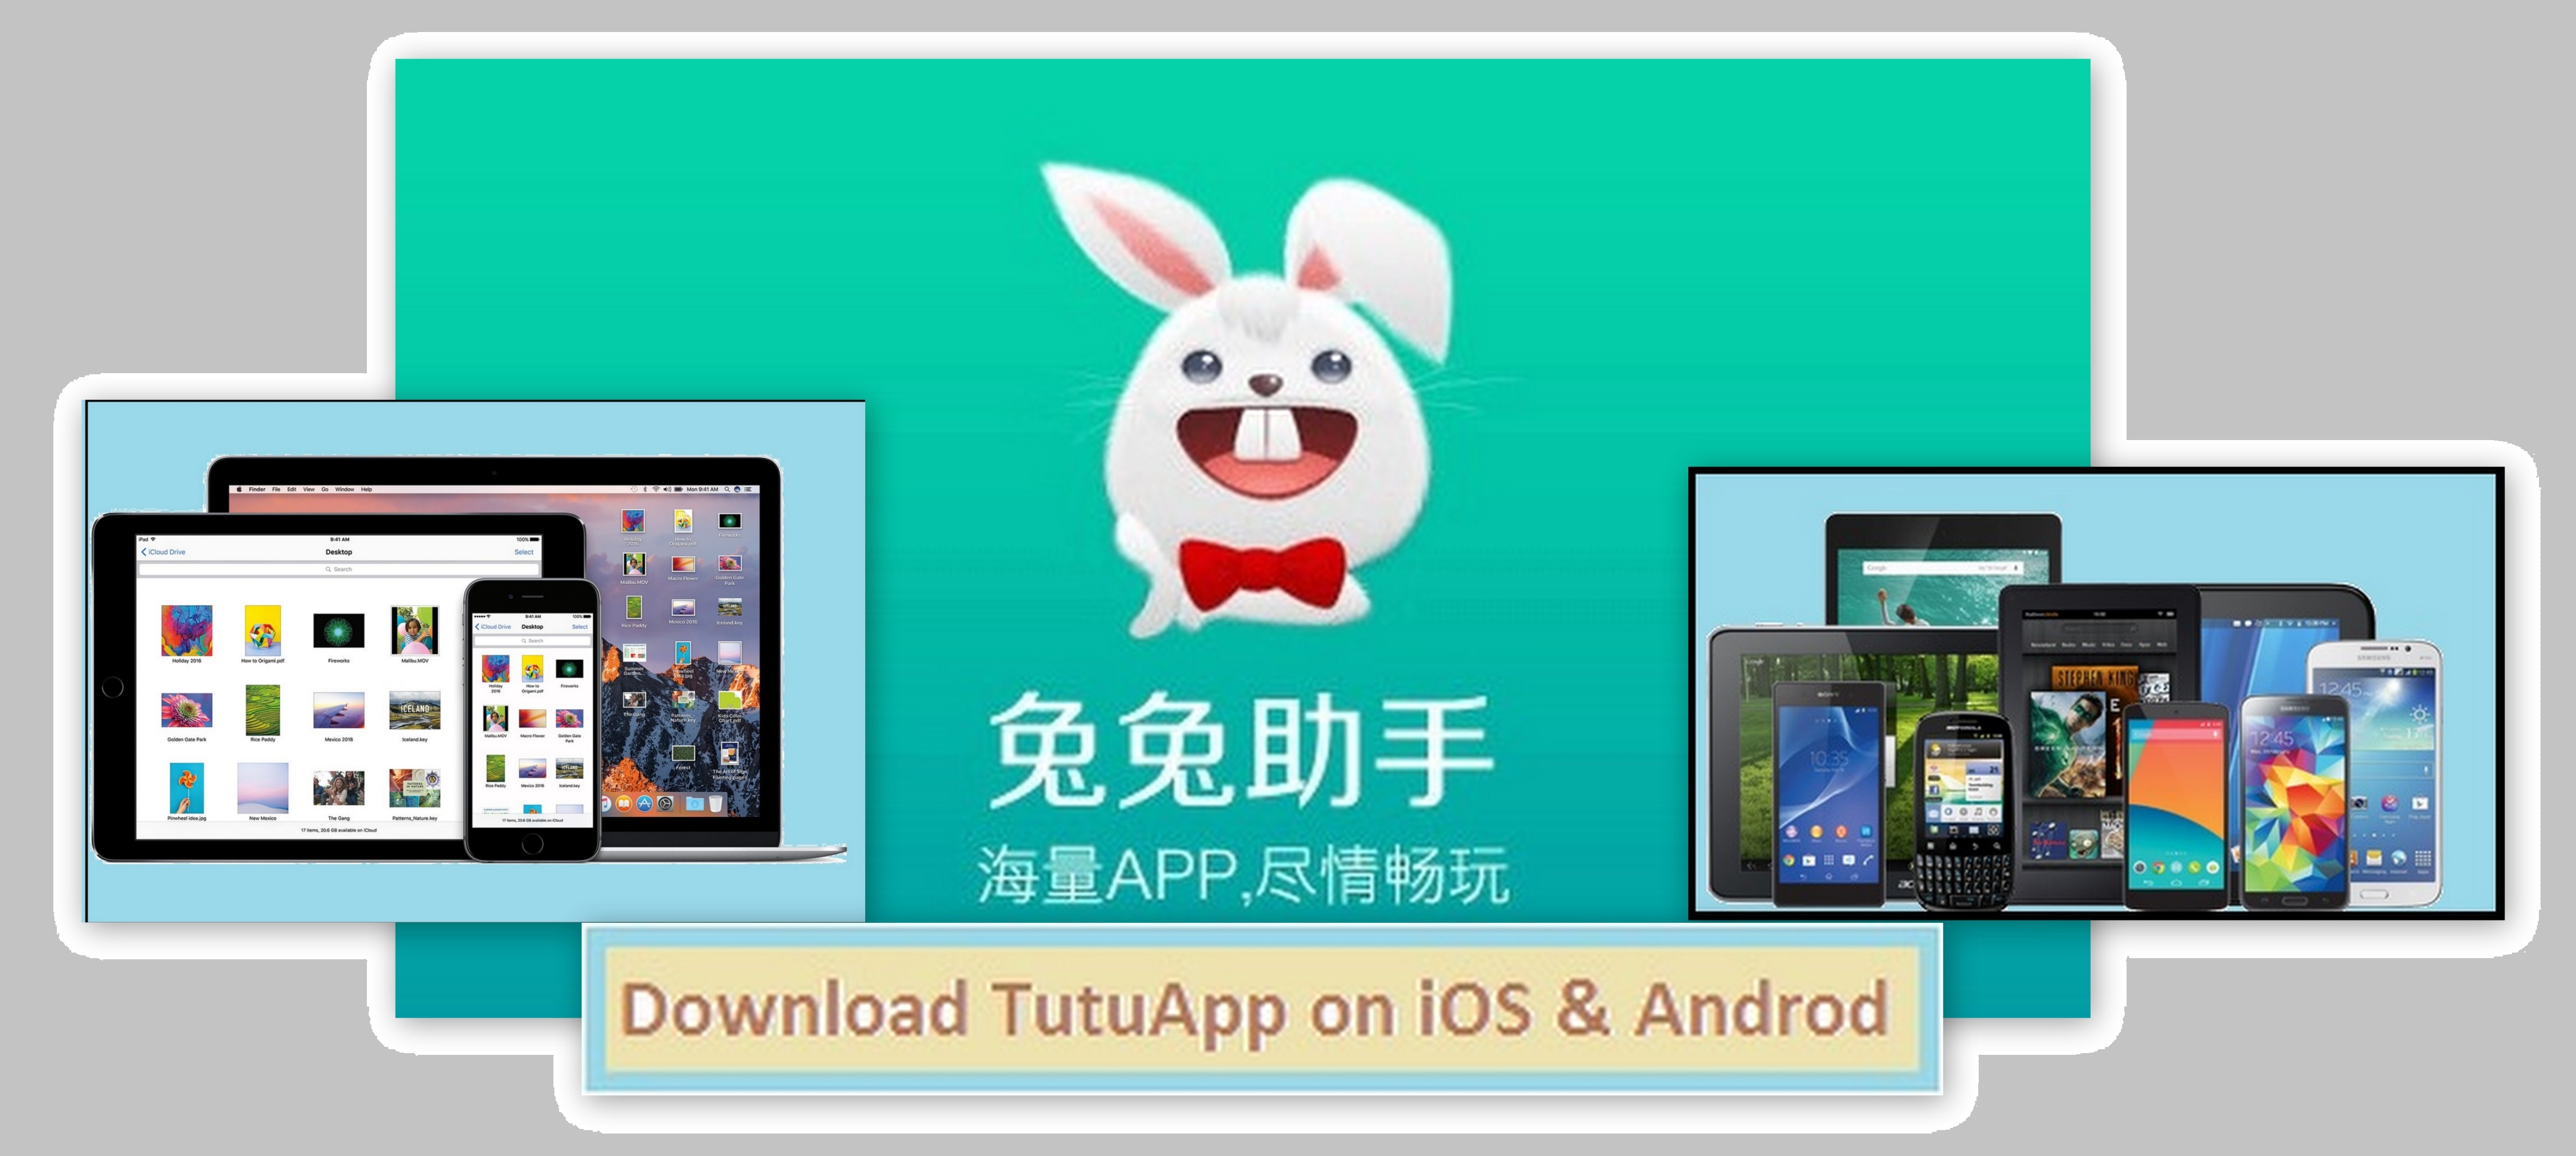 Ios Download App